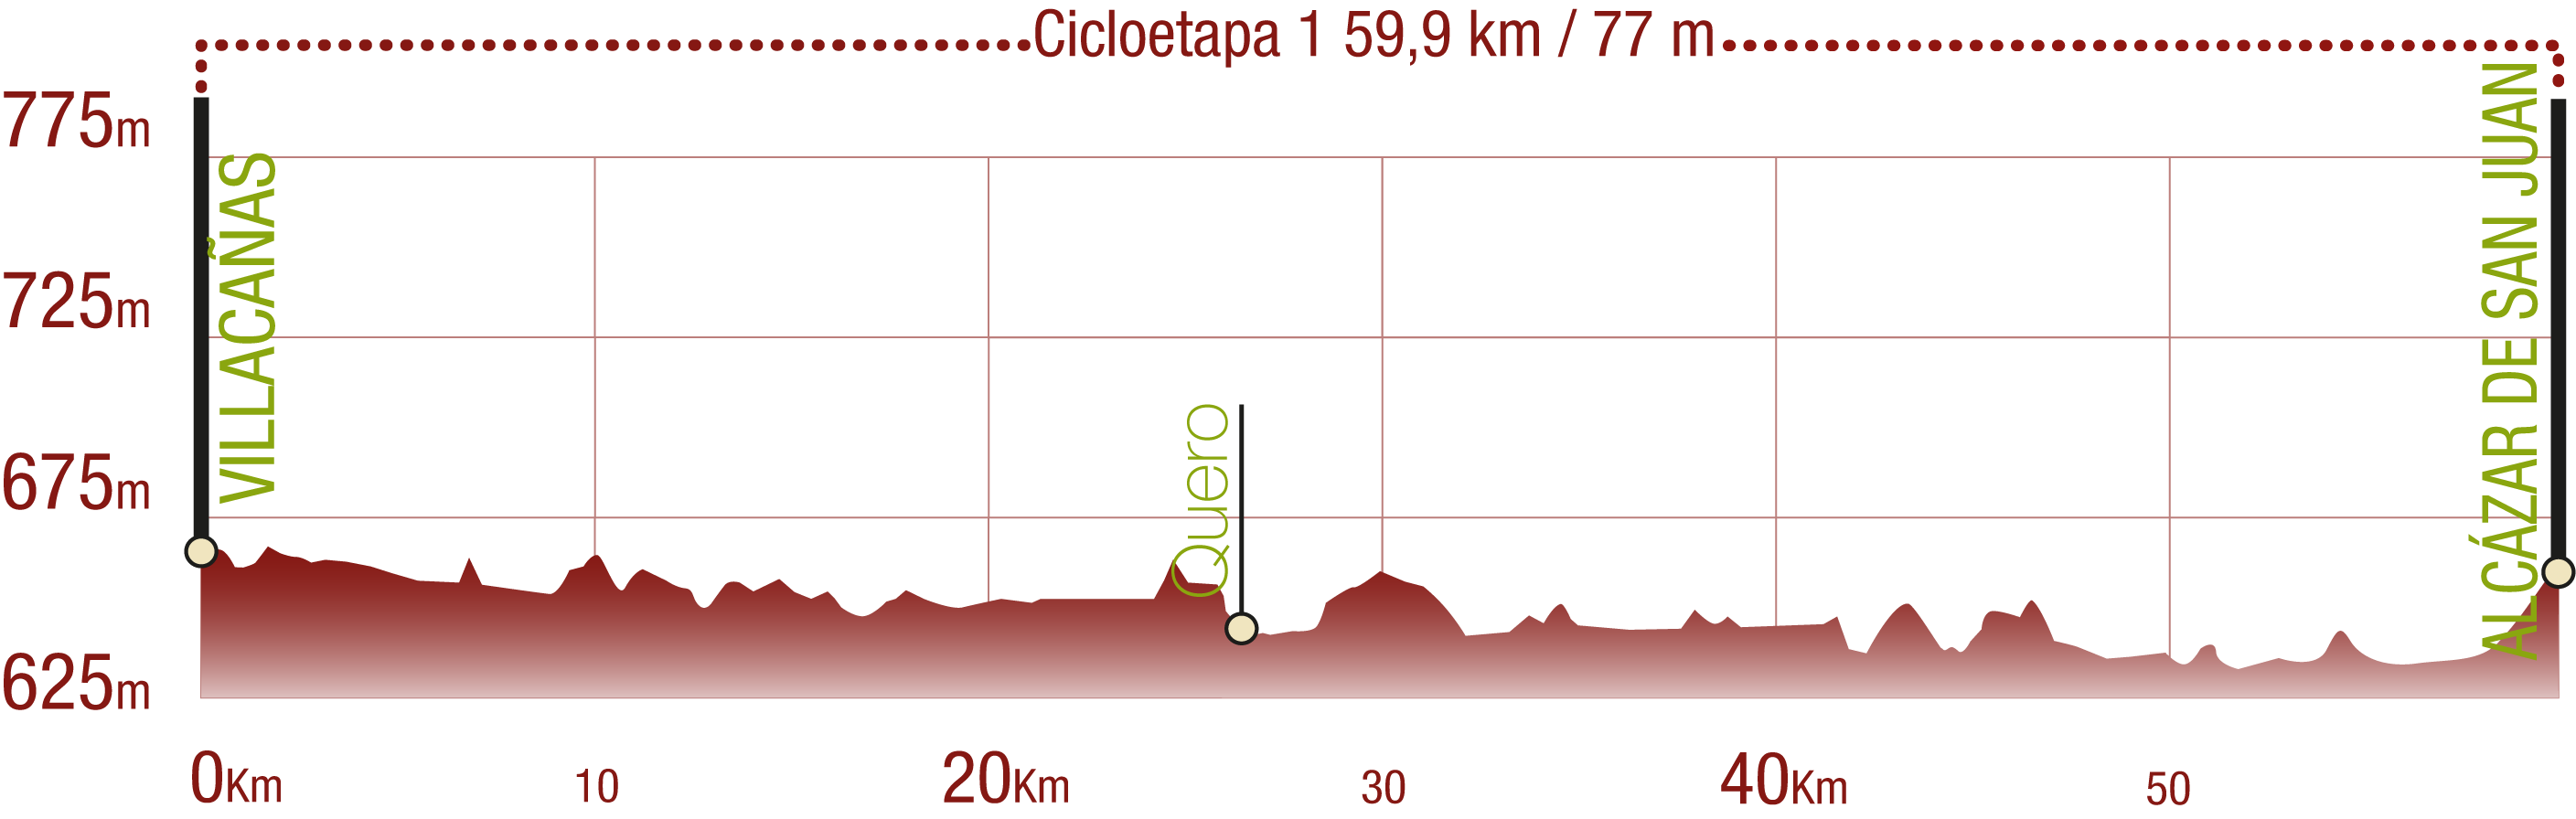 Perfil 
Perfil de la Cicloetapa 1 del CN de Humedales de La Mancha: 59,9 km / Desnivel de subida 77 m

